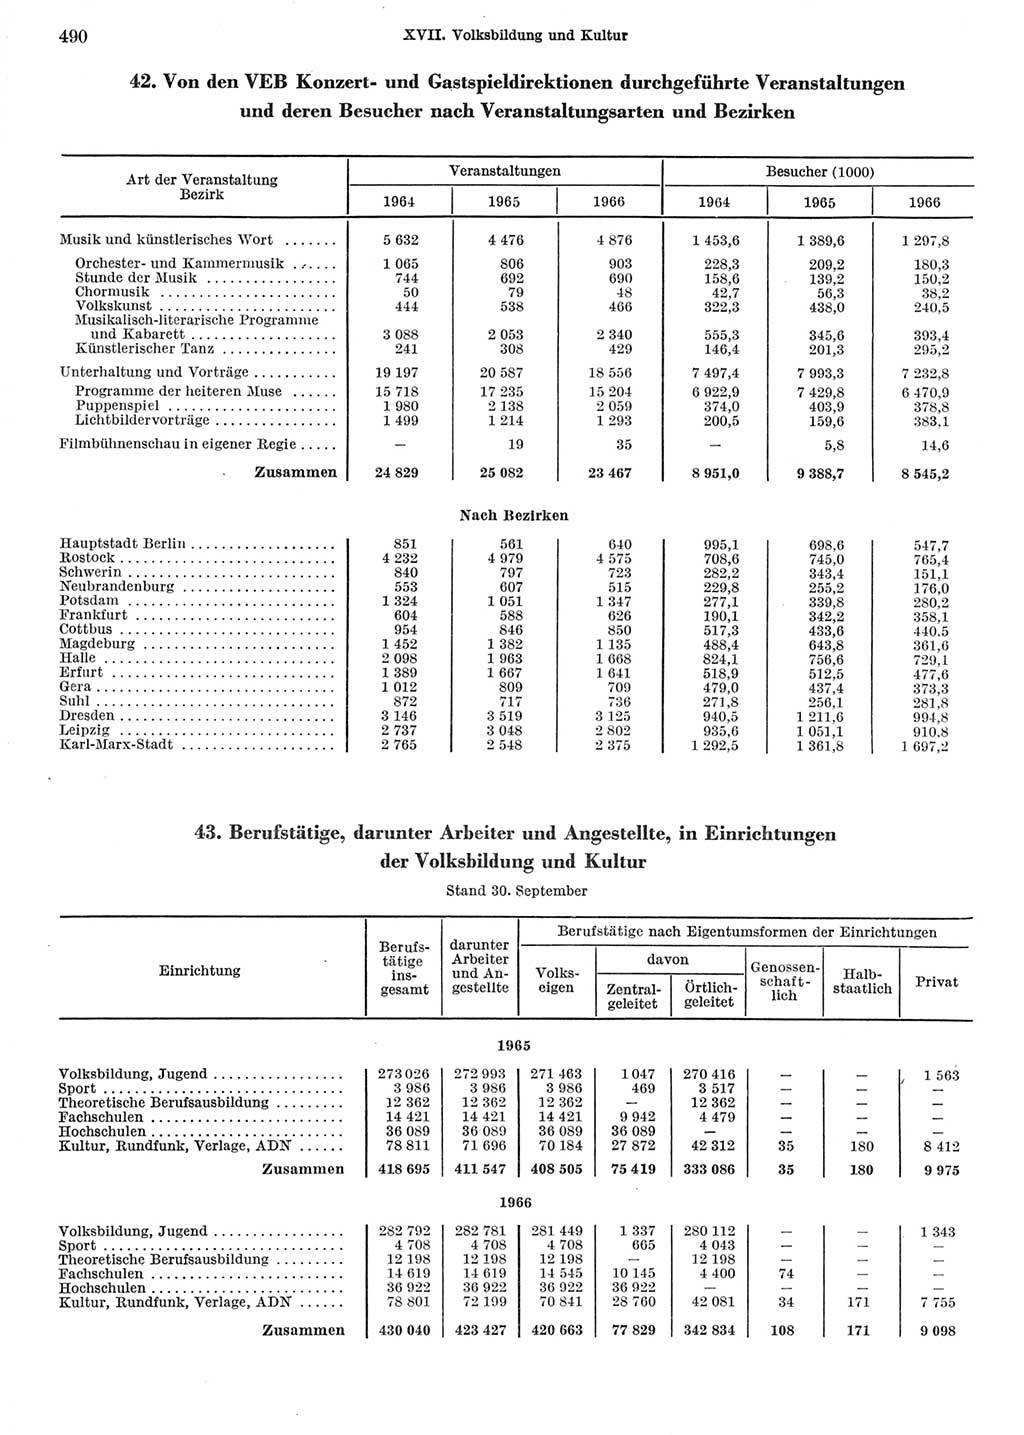 Statistisches Jahrbuch der Deutschen Demokratischen Republik (DDR) 1967, Seite 490 (Stat. Jb. DDR 1967, S. 490)